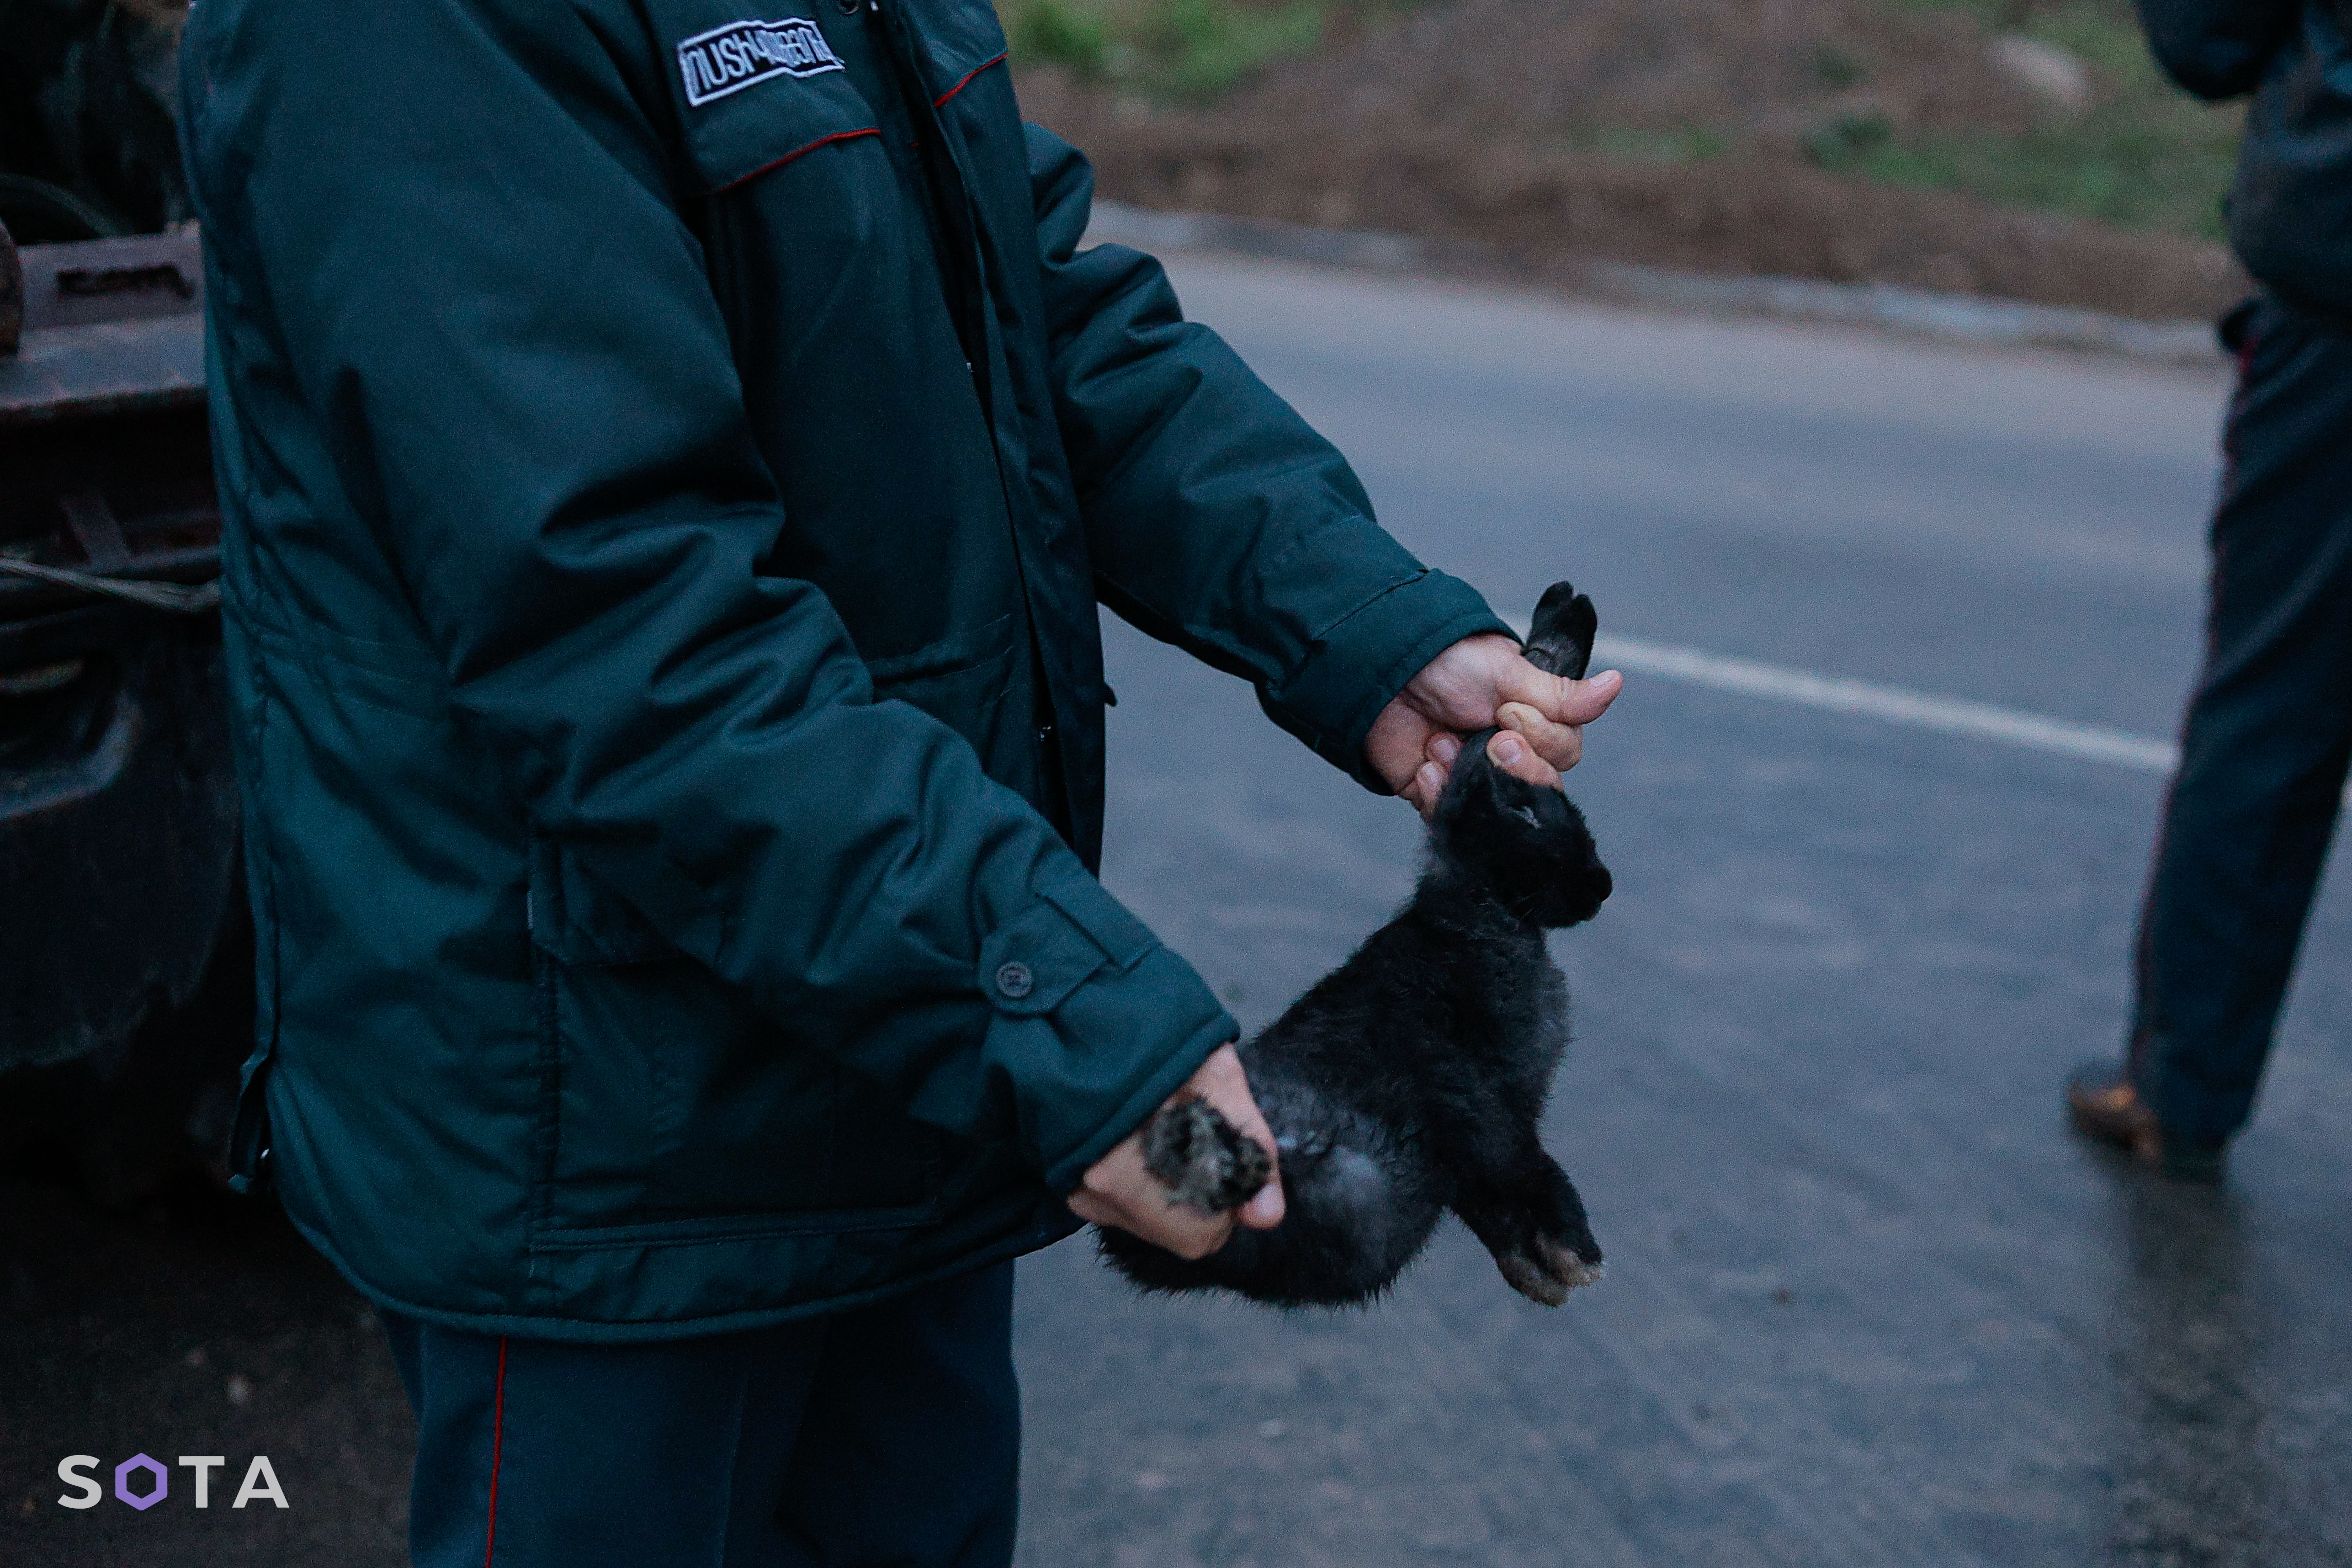 Армянский полицейский показывает зайца которого вез один из беженцев.
Алексей Молчалин / SOTA